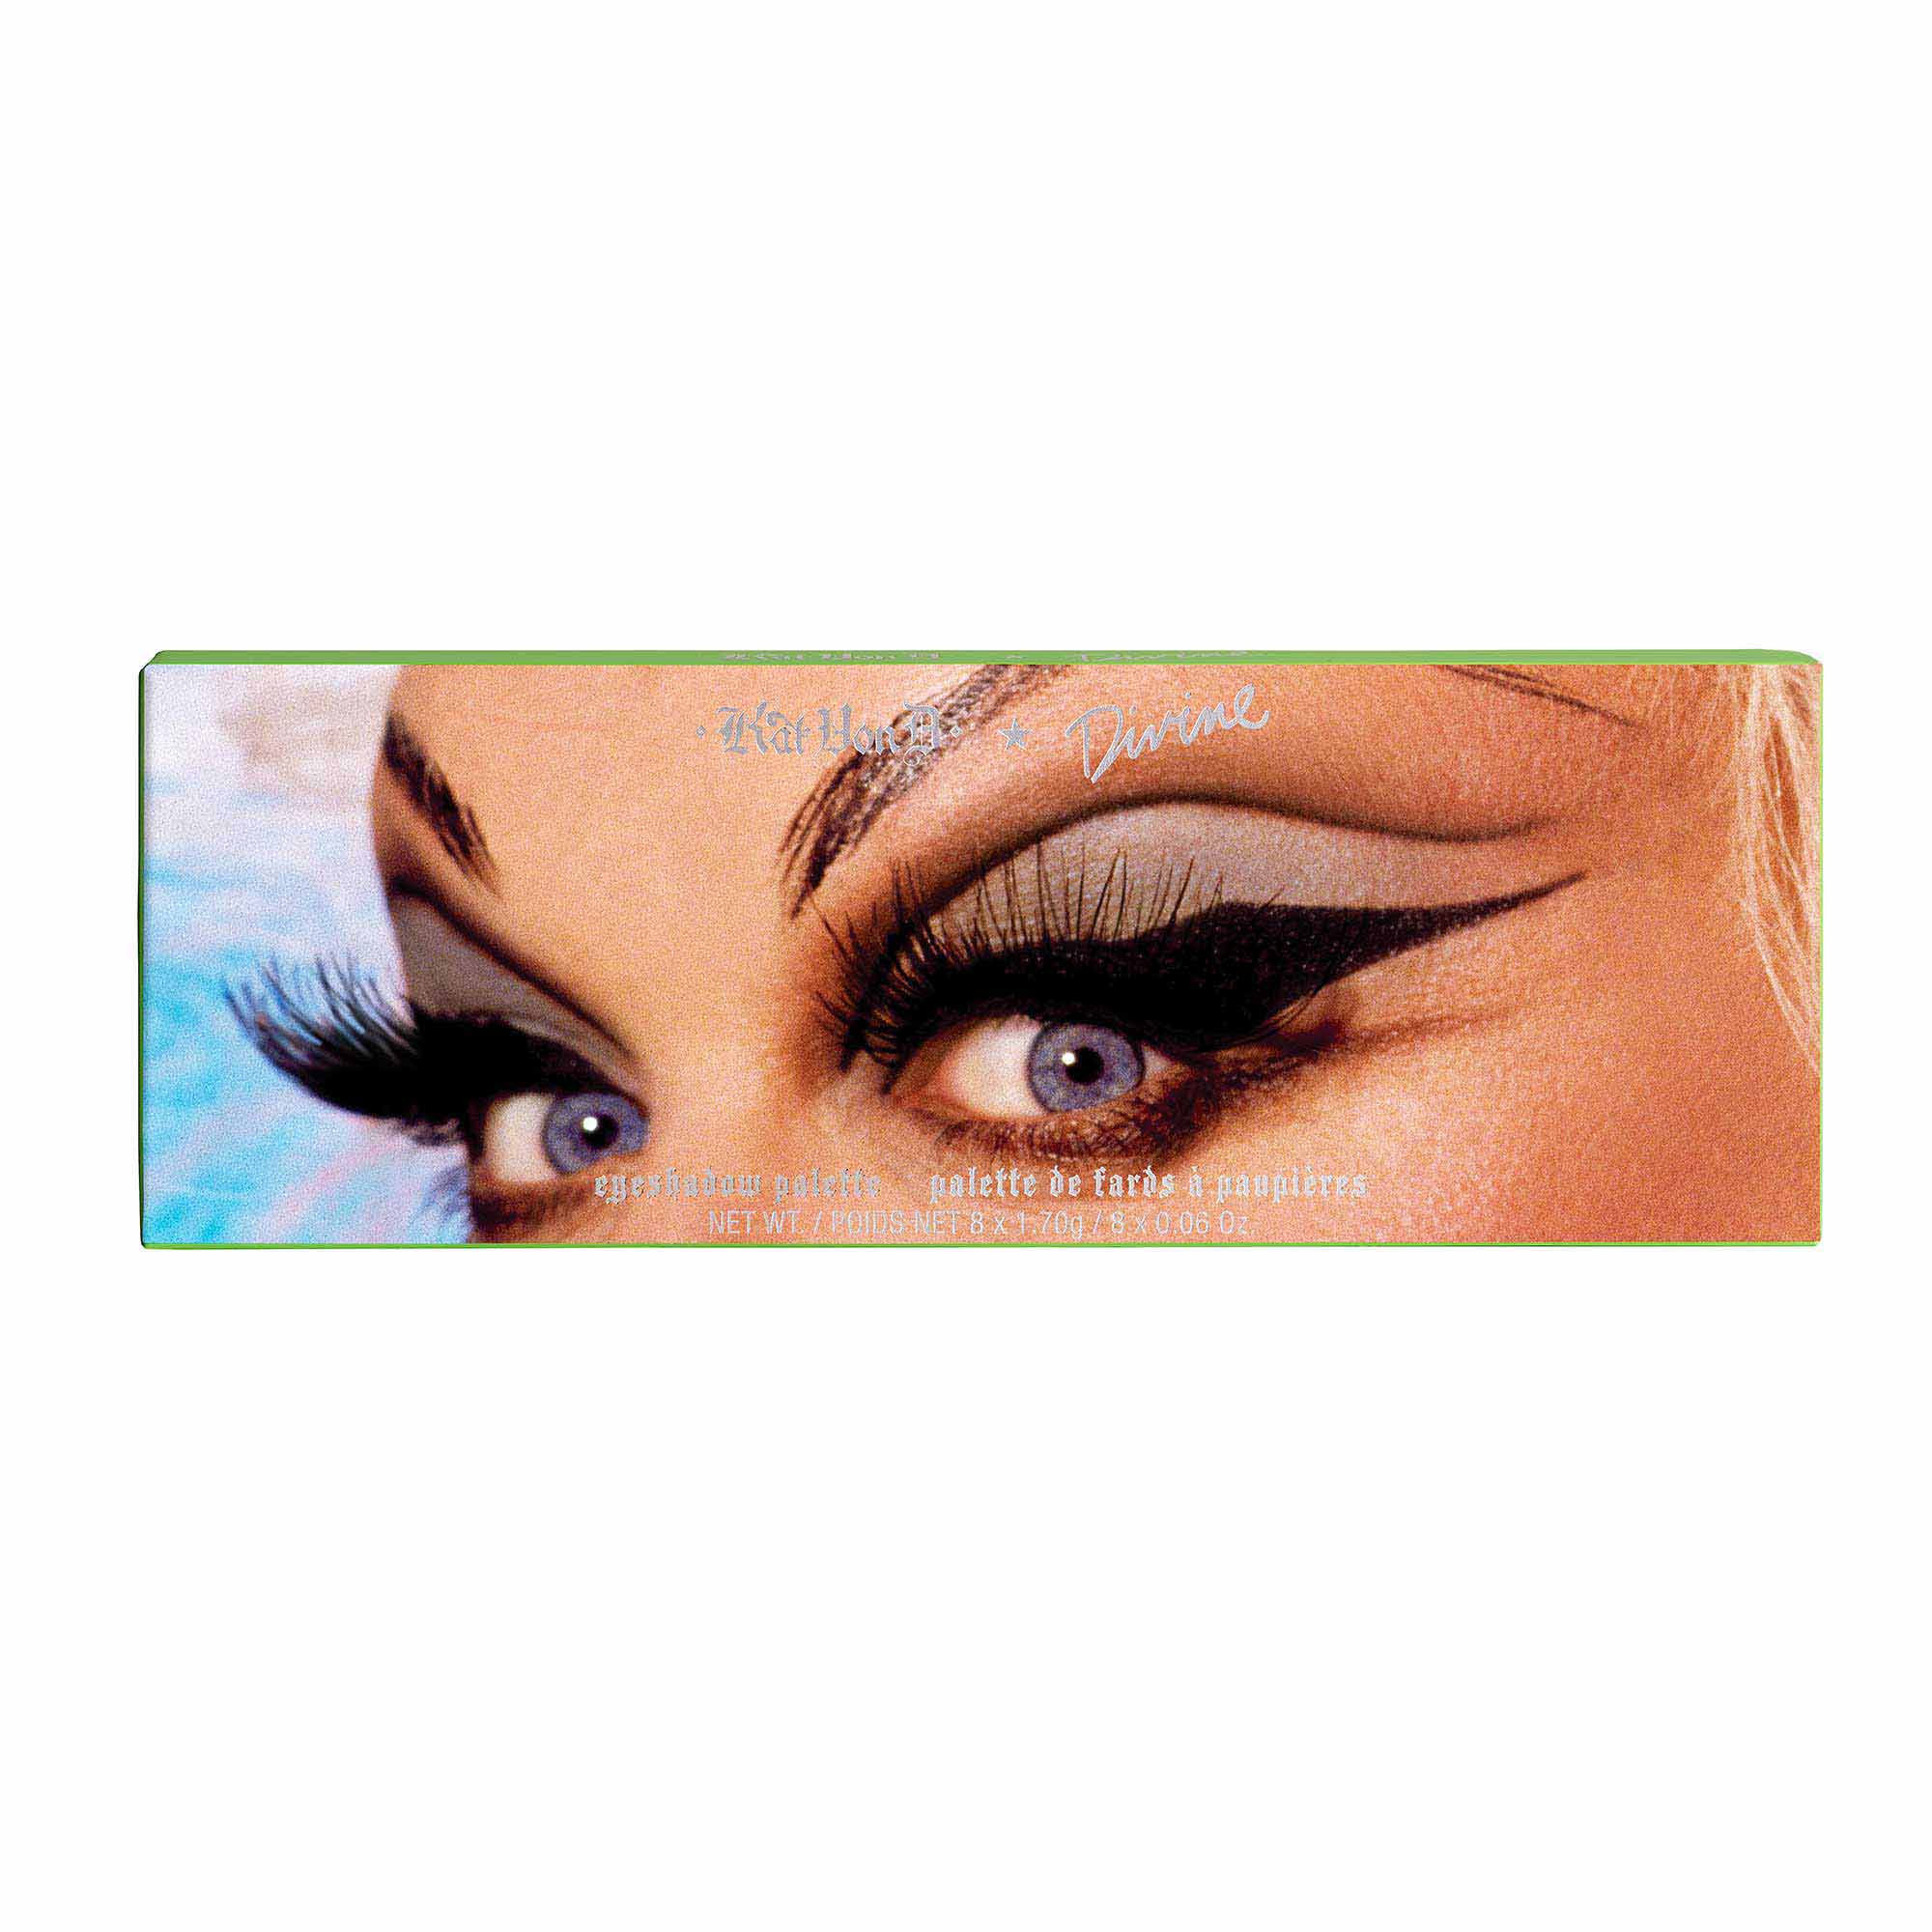 Kat Von D x Divine Eyeshadow Palette | Kat Von D Beauty